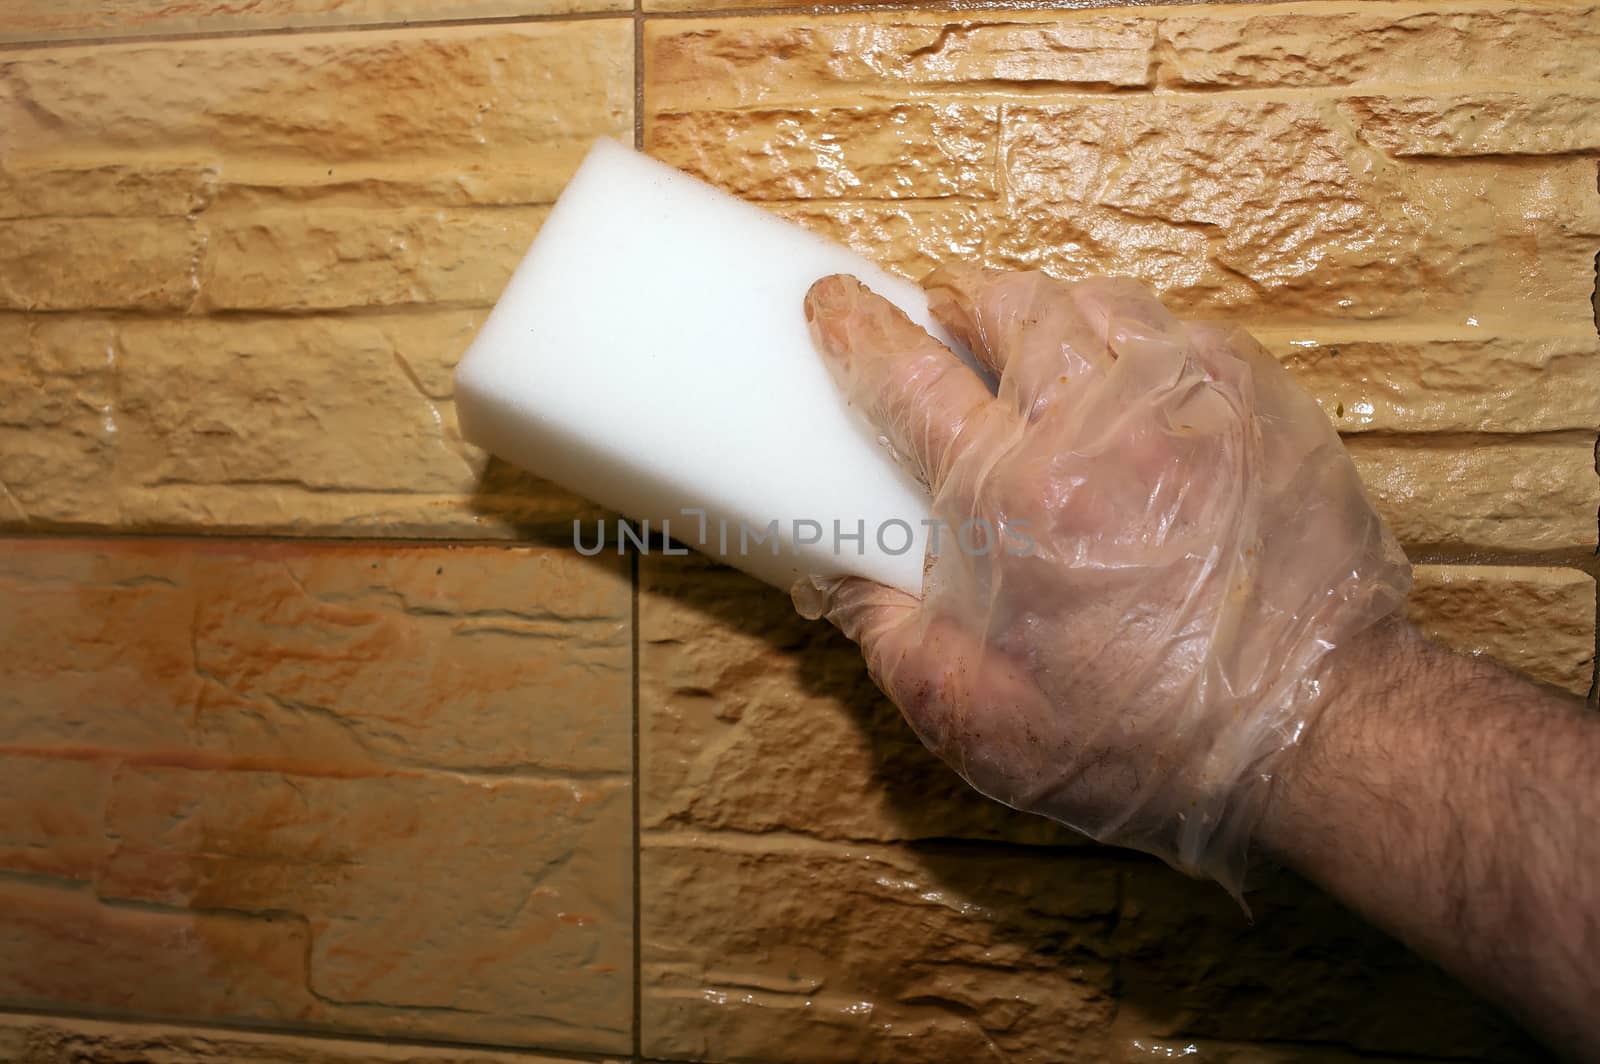 Wash finishing tiles by Krakatuk